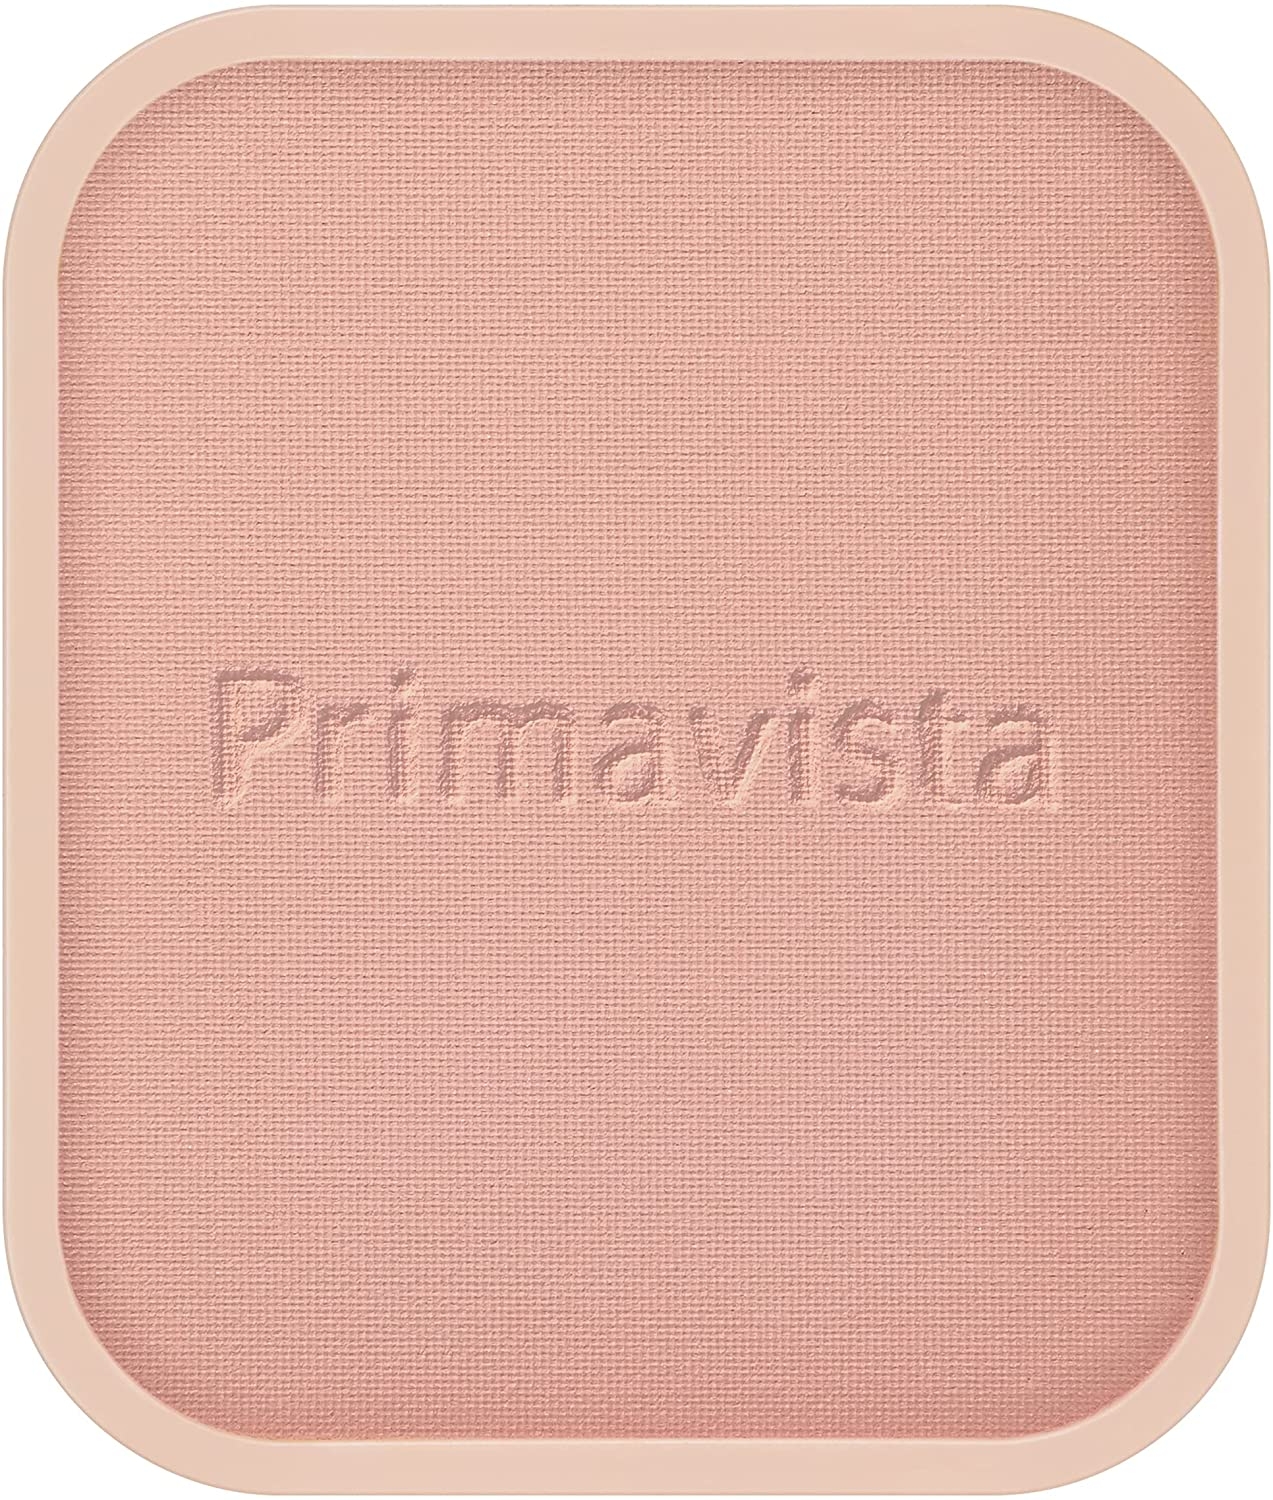 SOFINA Primavista(ソフィーナ プリマヴィスタ) ダブルエフェクト パウダーの商品画像サムネ11 